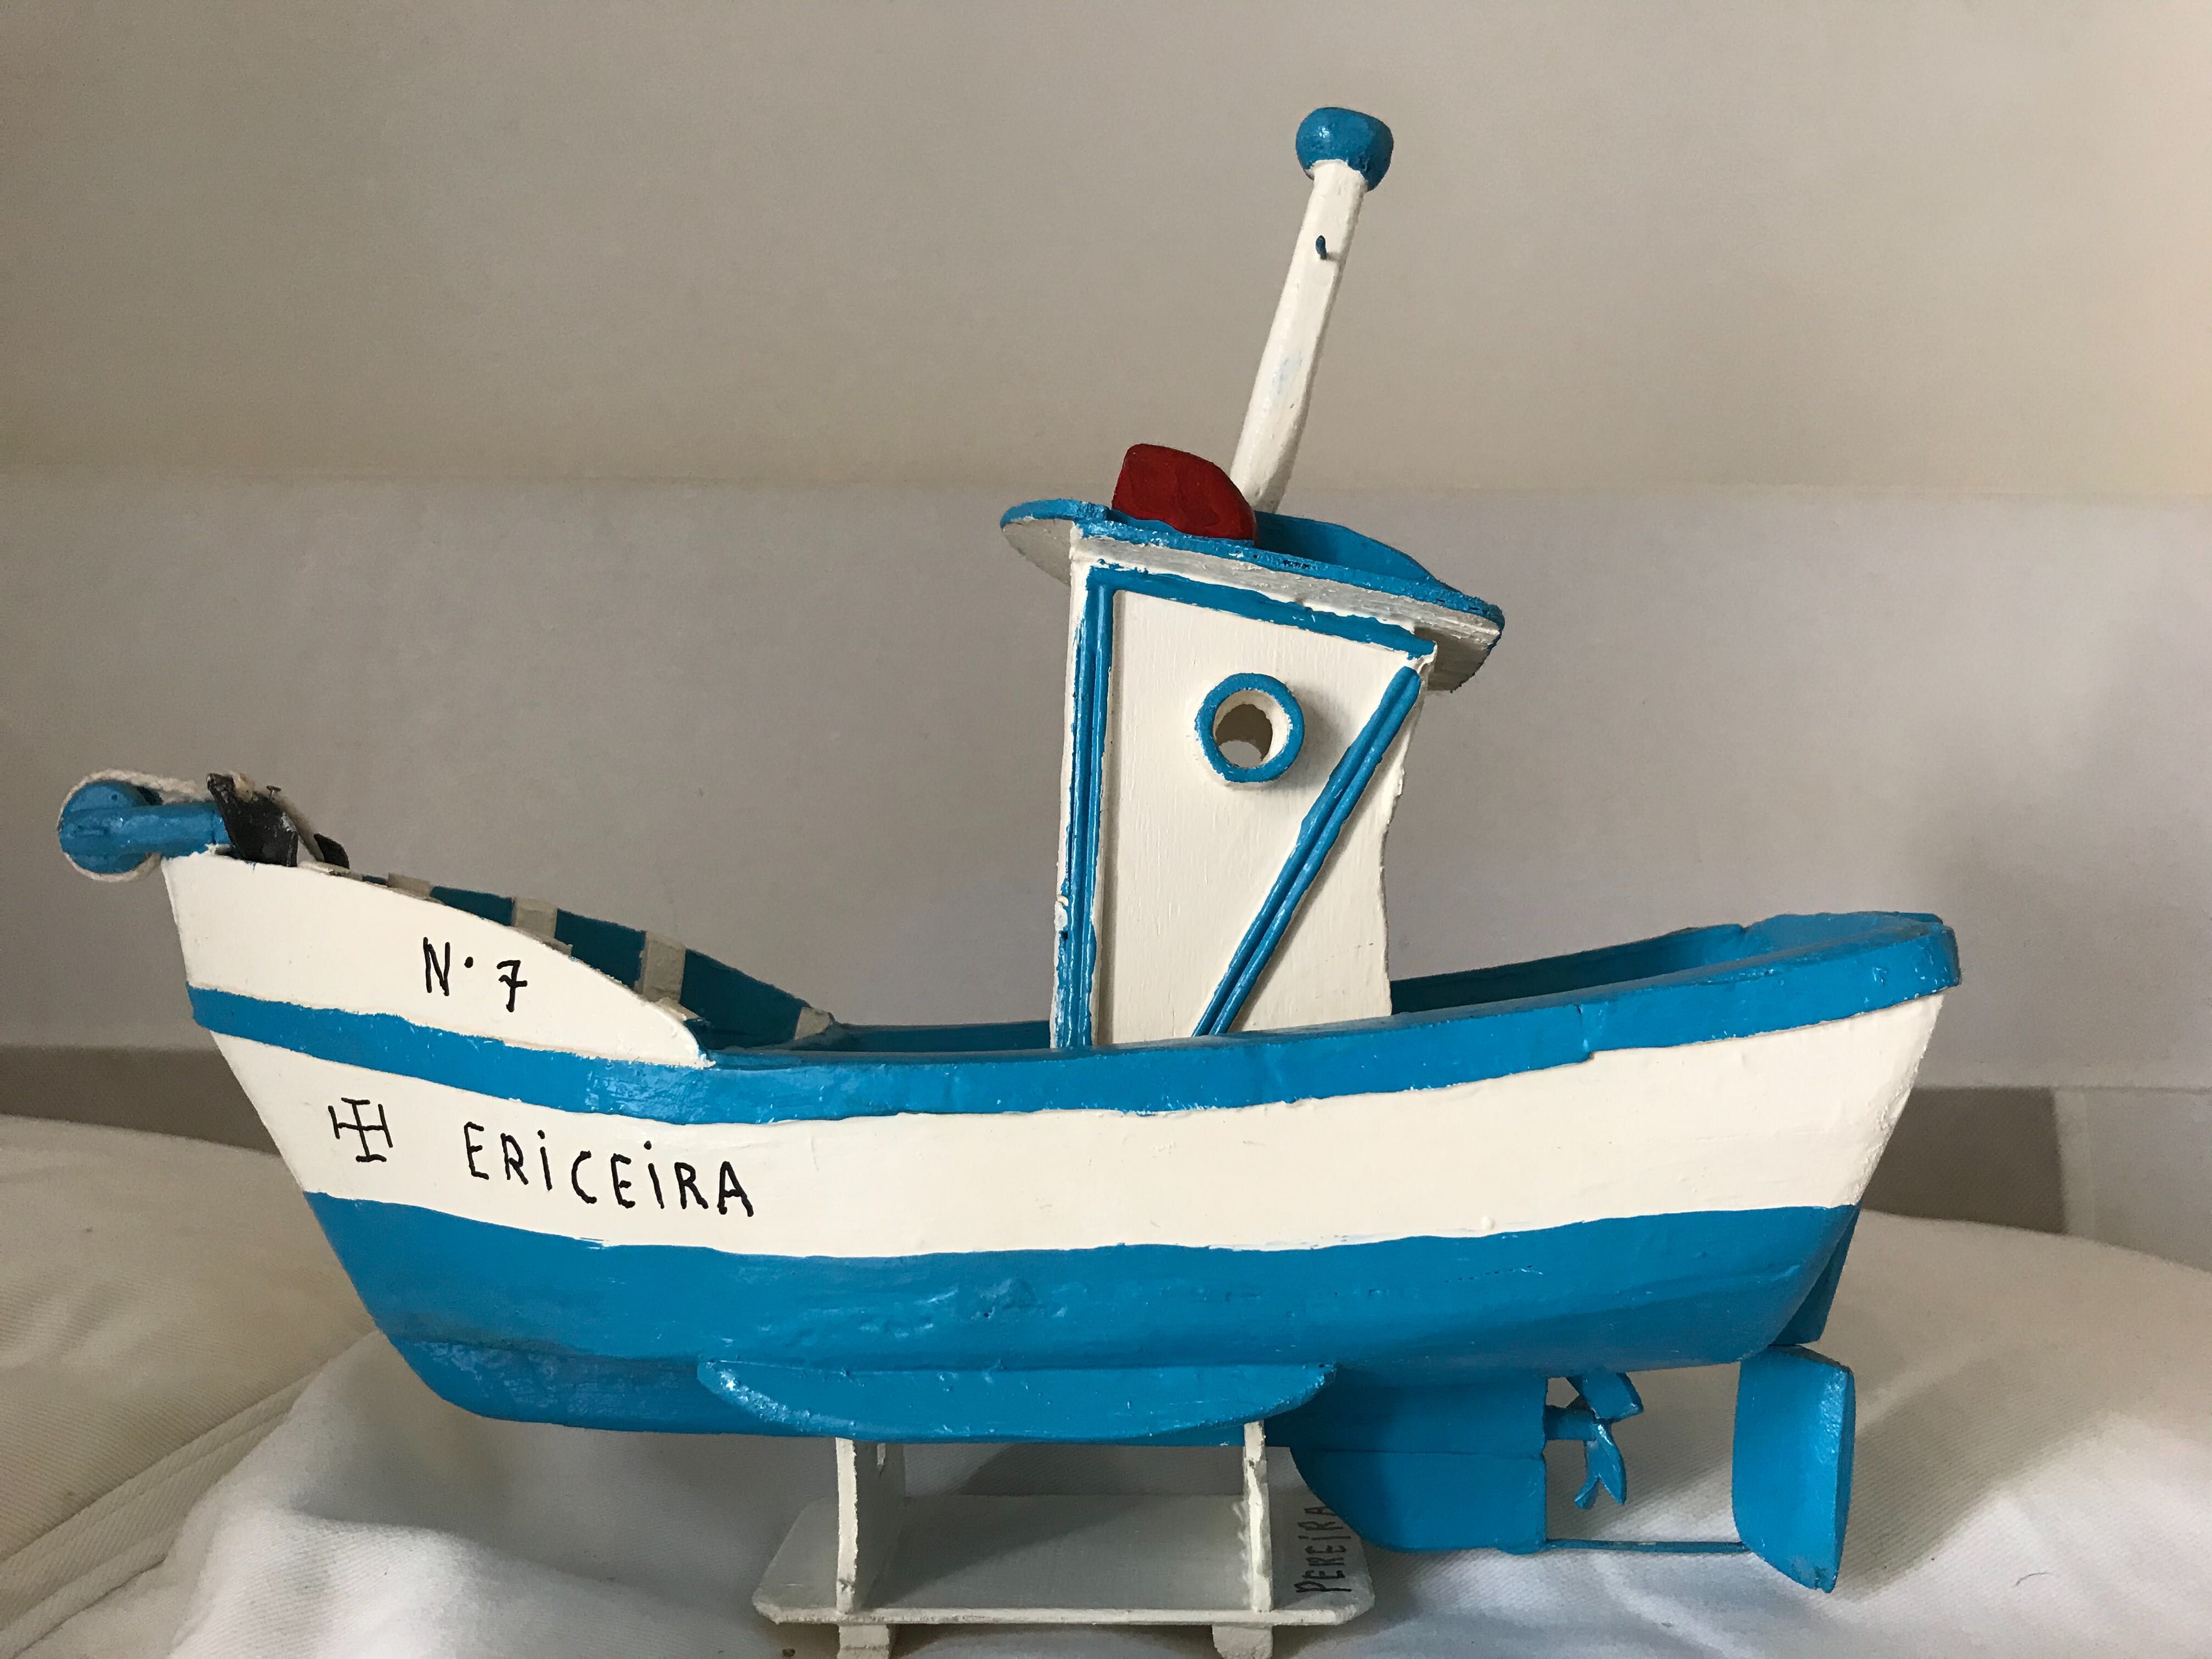 Barco de pesca vintage feito a mão - Ericeira